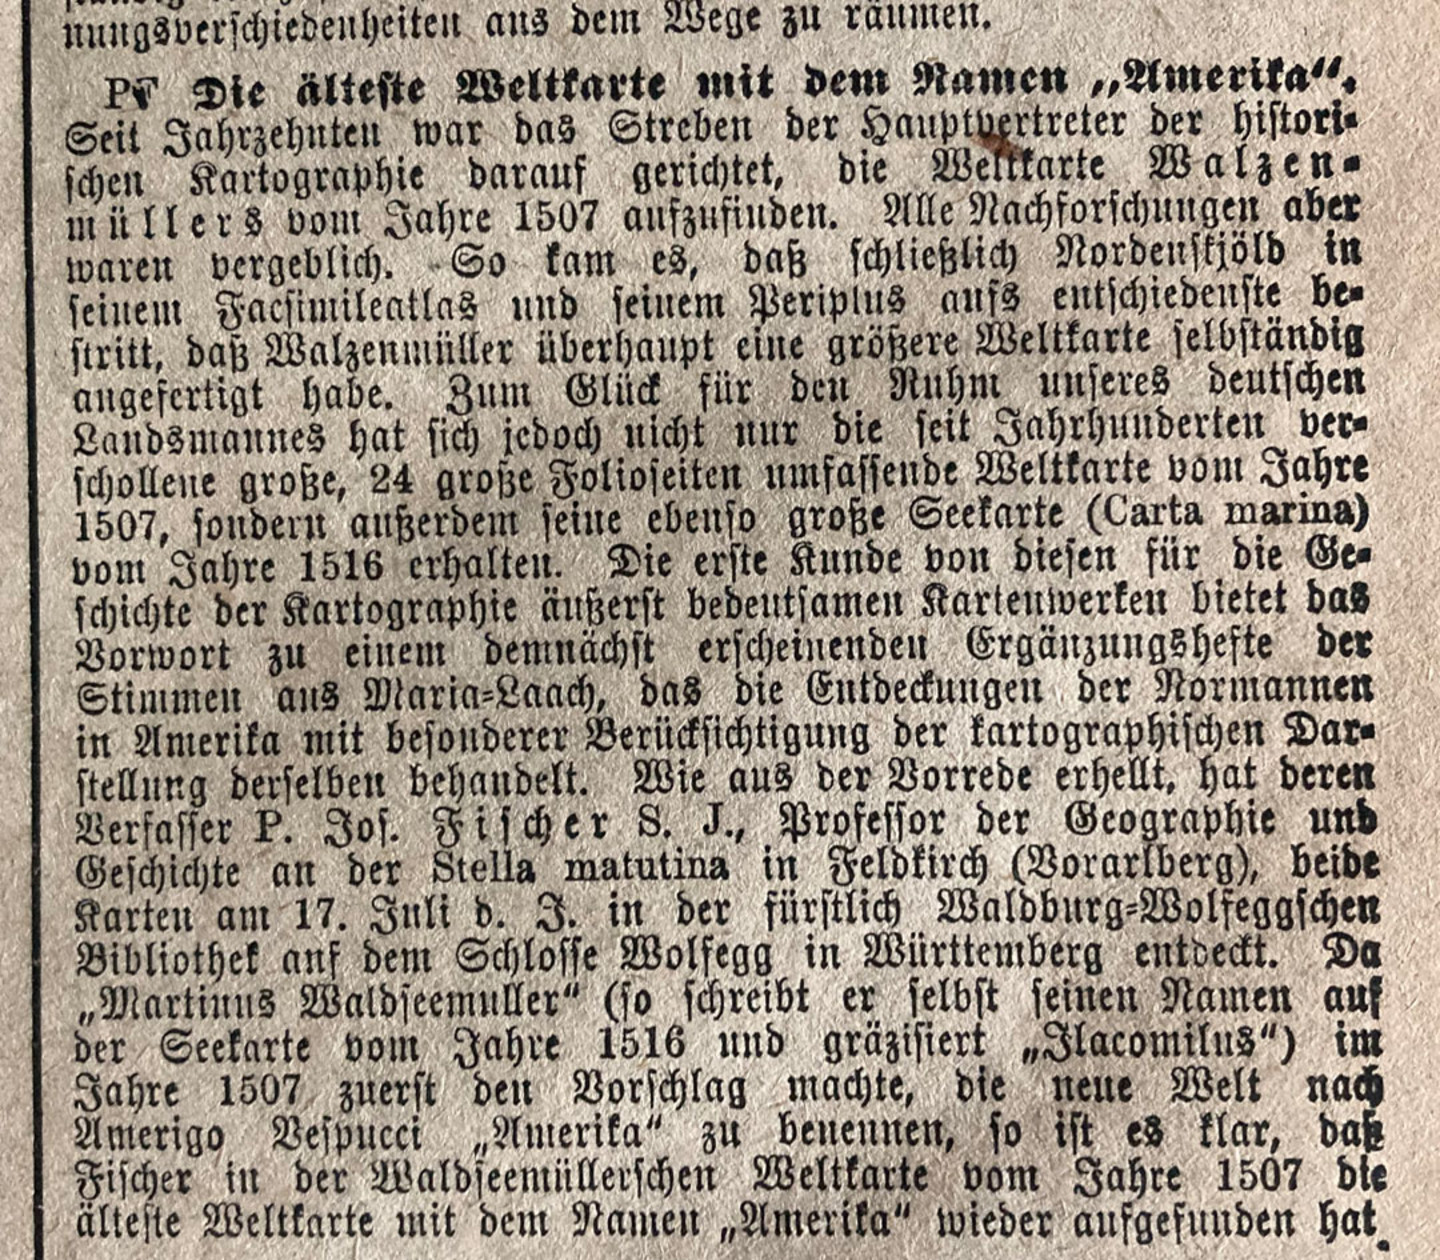 Ein Scan von dem Artikel der Kölnischen Volkszeitung über den Fund der Waldseemüllerkarte von 1507, erschienen im Jahre 1901 in der Abendausgabe unter der Rubrik "Welt und Wissen".